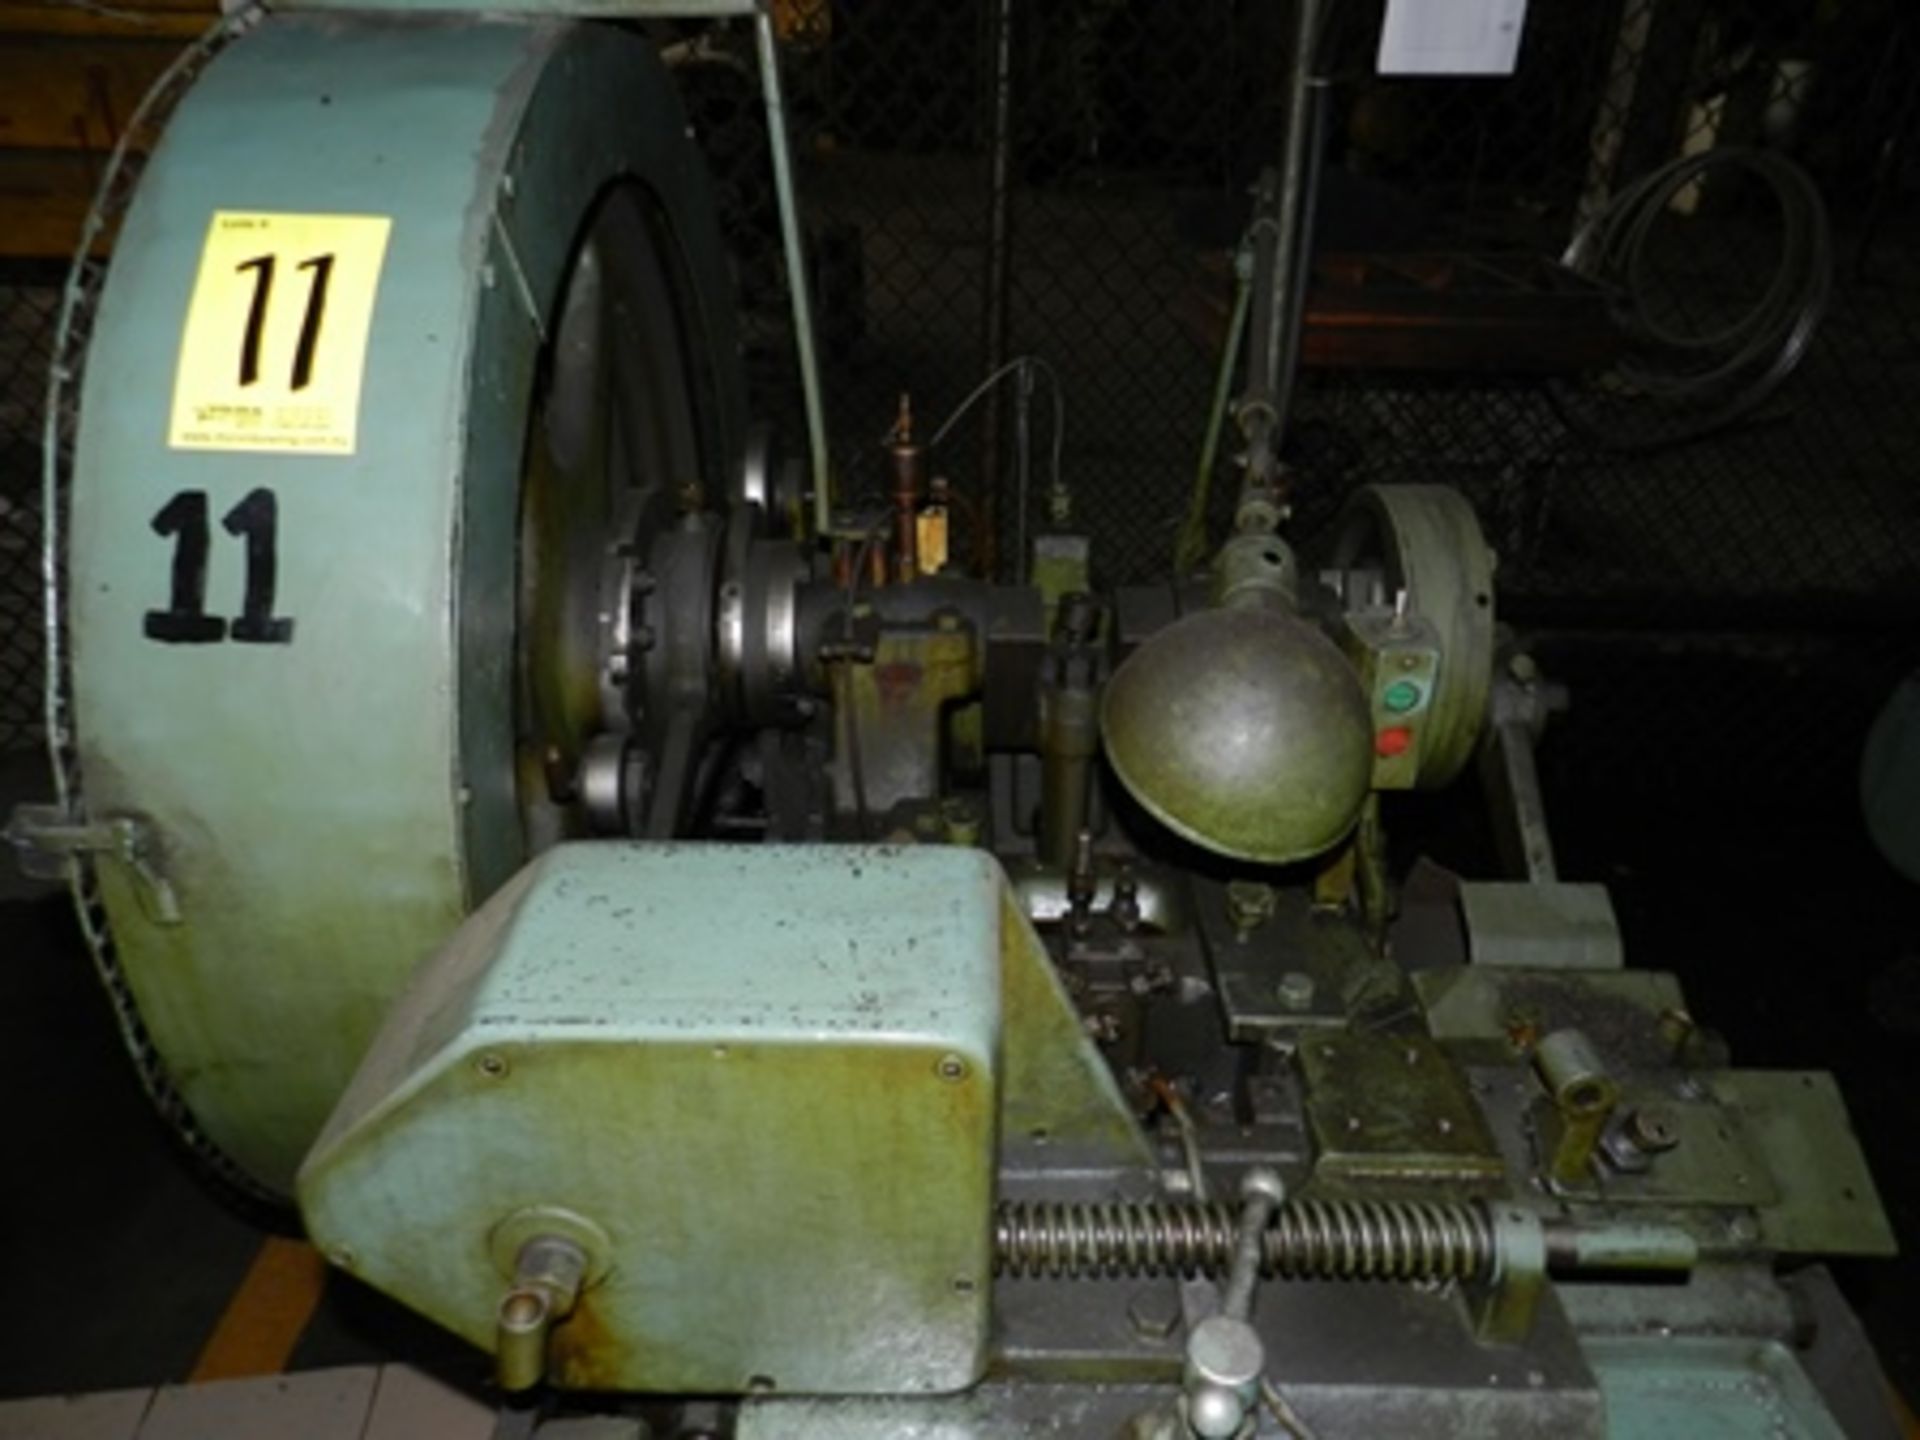 Máquina forjadora de remaches 3/16" marca Waterbury Farrel serie 27159513 con cabezadora en frio - Image 9 of 20